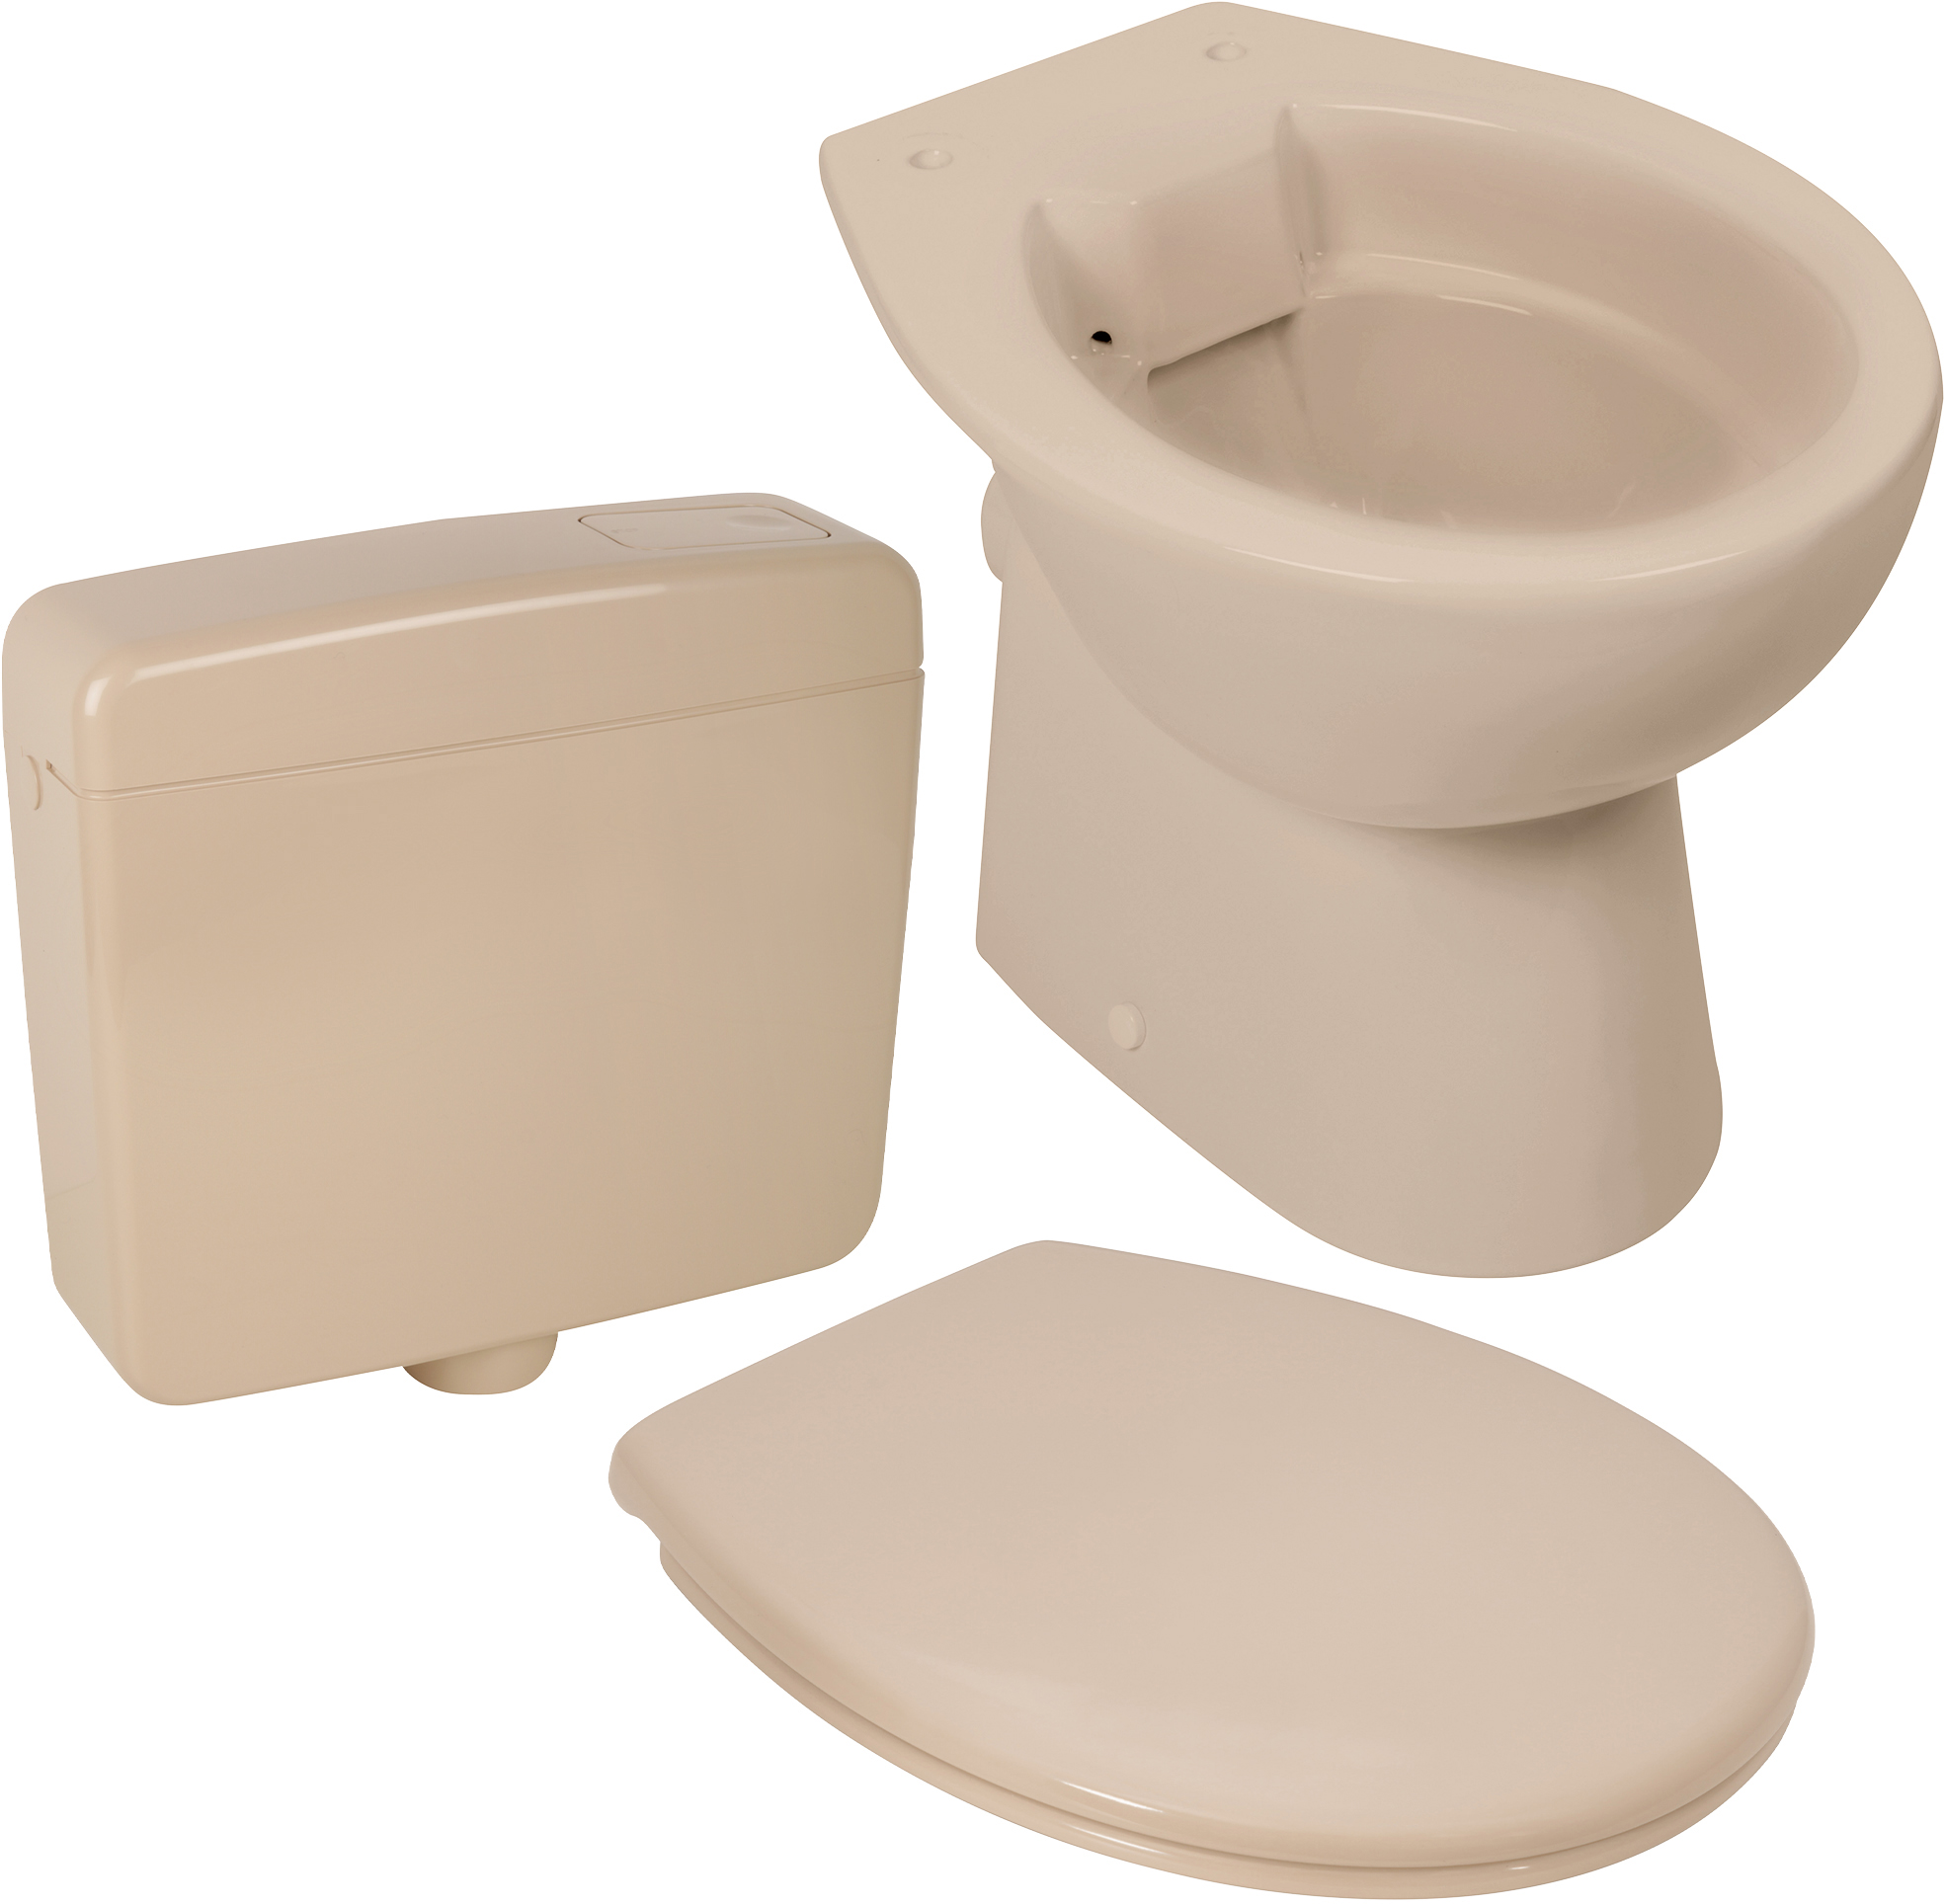 Keramik-Komplettset in Beige, spülrandloses Stand-WC mit WC-Sitz und Spülkasten in Bahamabeige